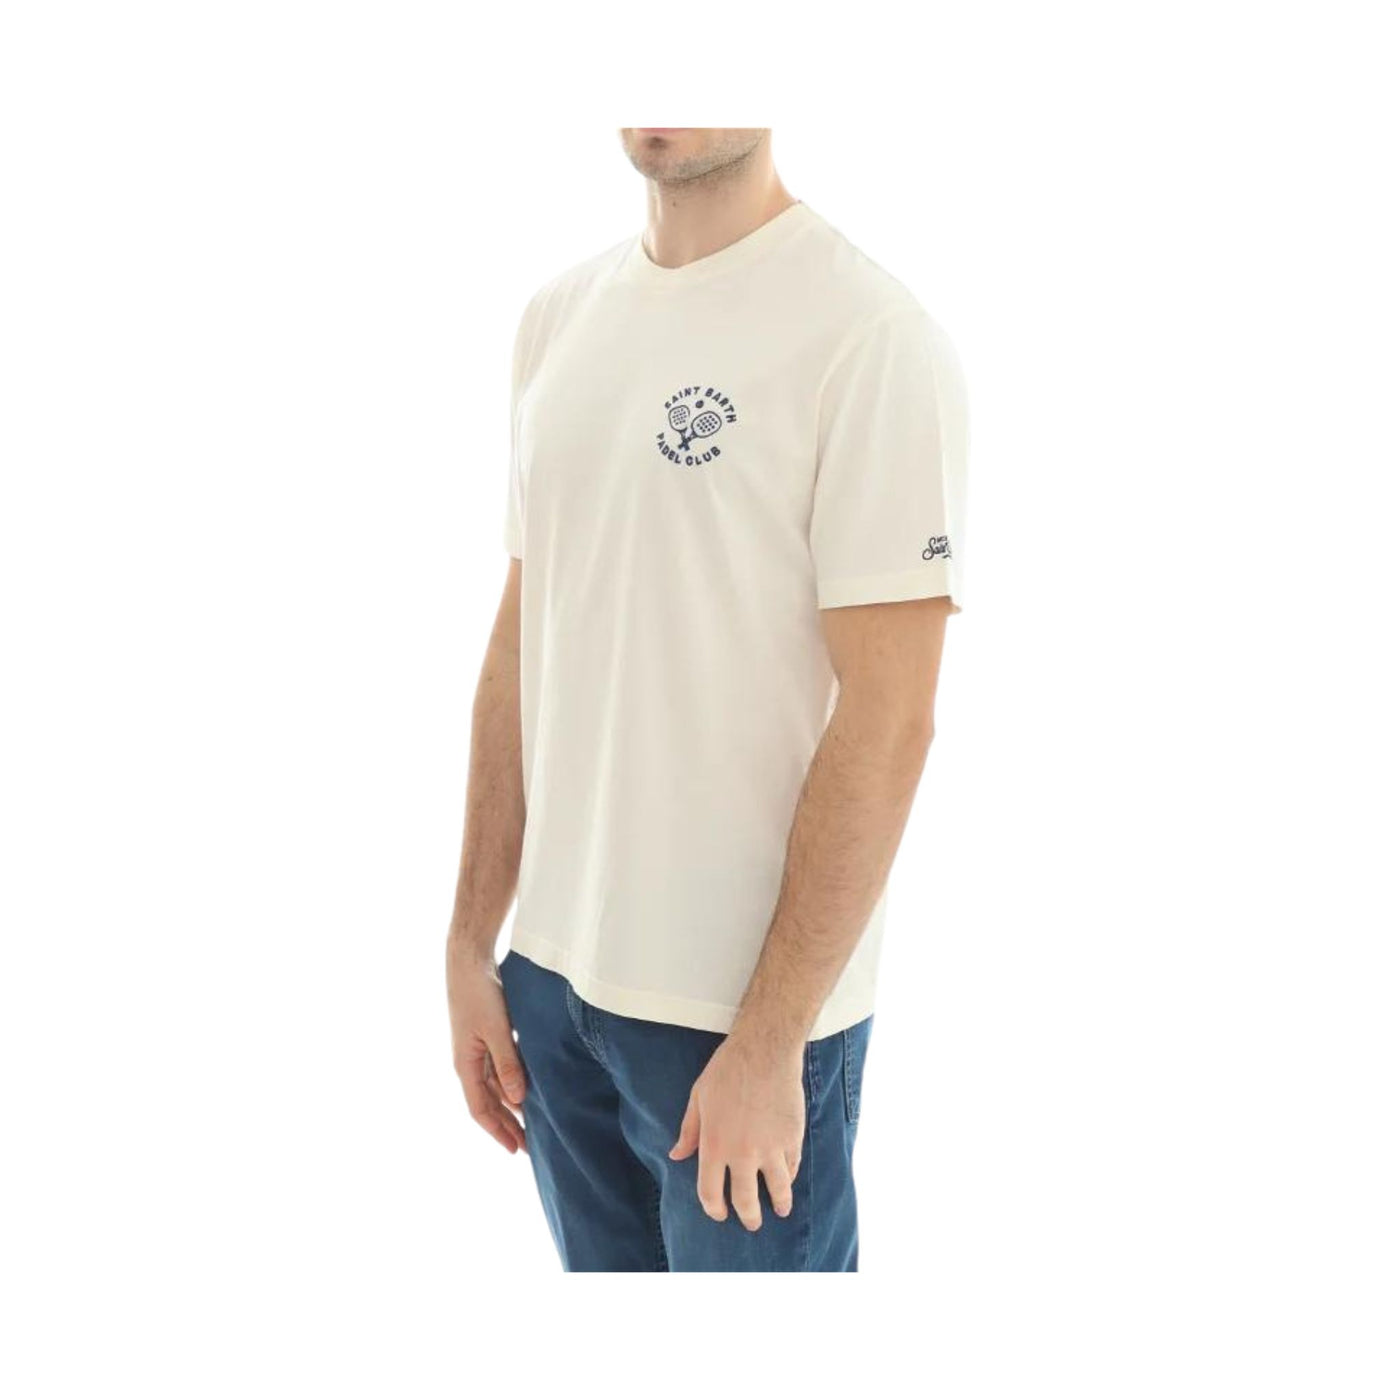 T-shirt Uomo Padel club